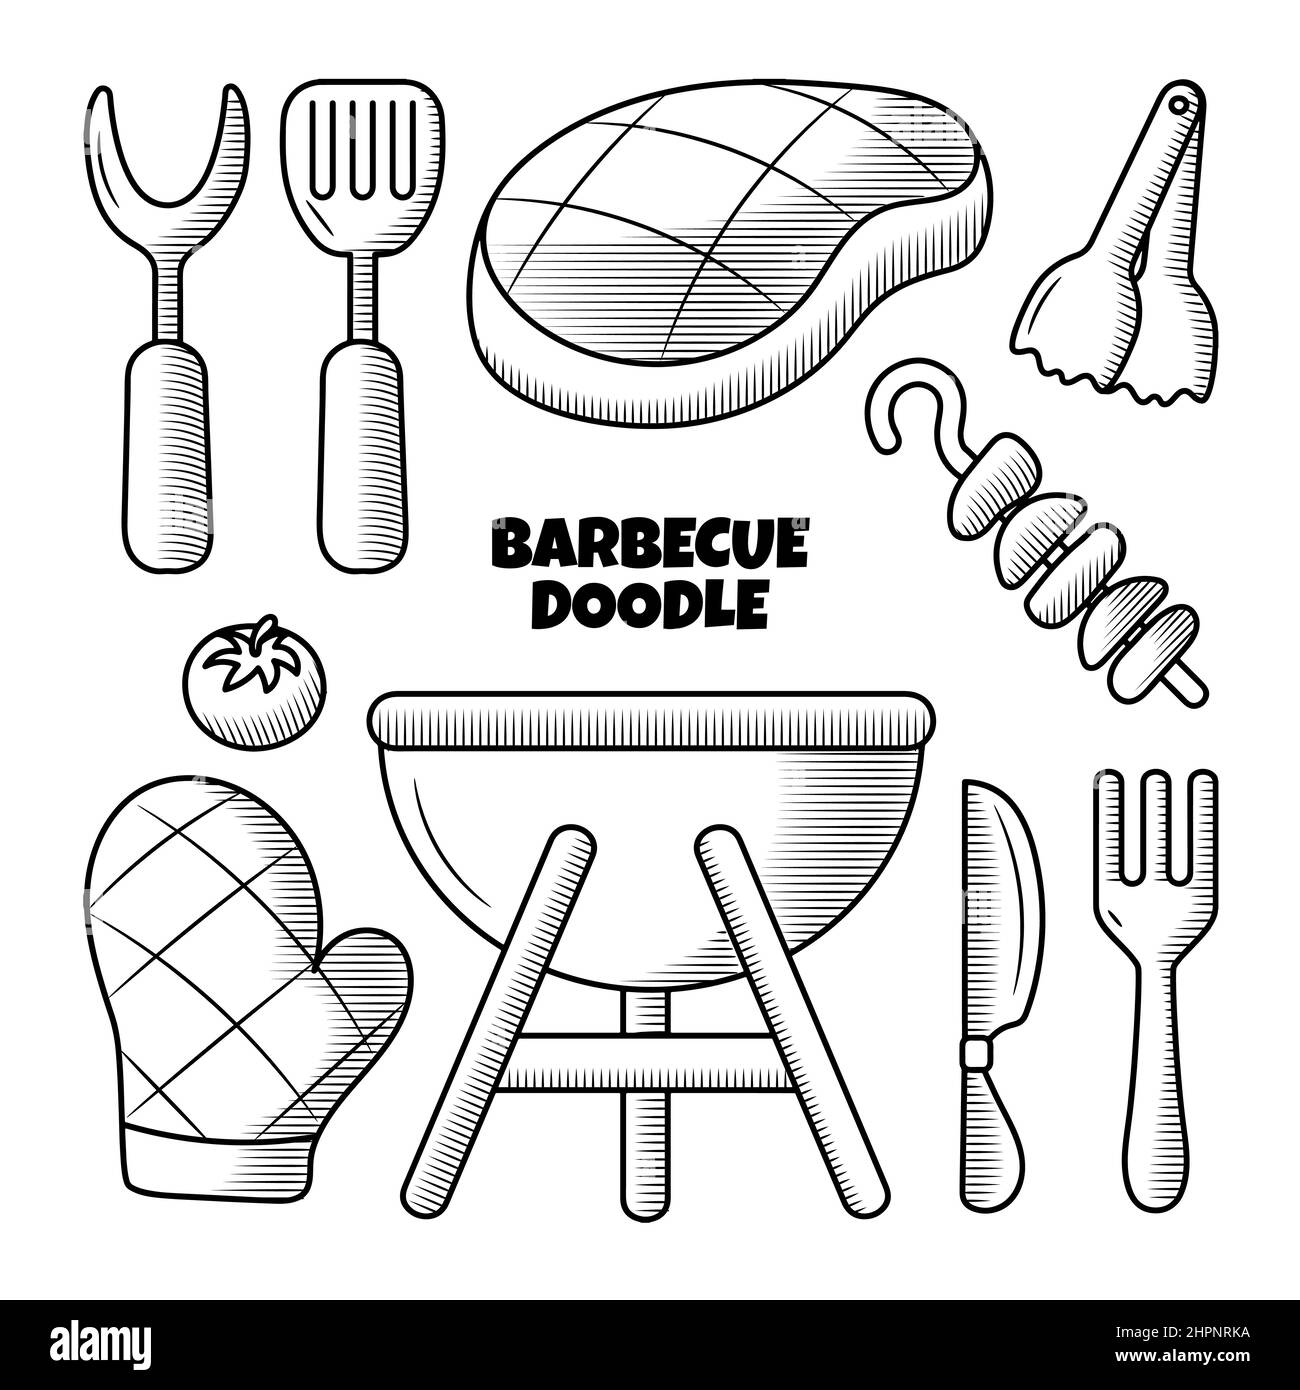 Barbecue illustrazione di doodle disegnata a mano con stile di contorno Illustrazione Vettoriale